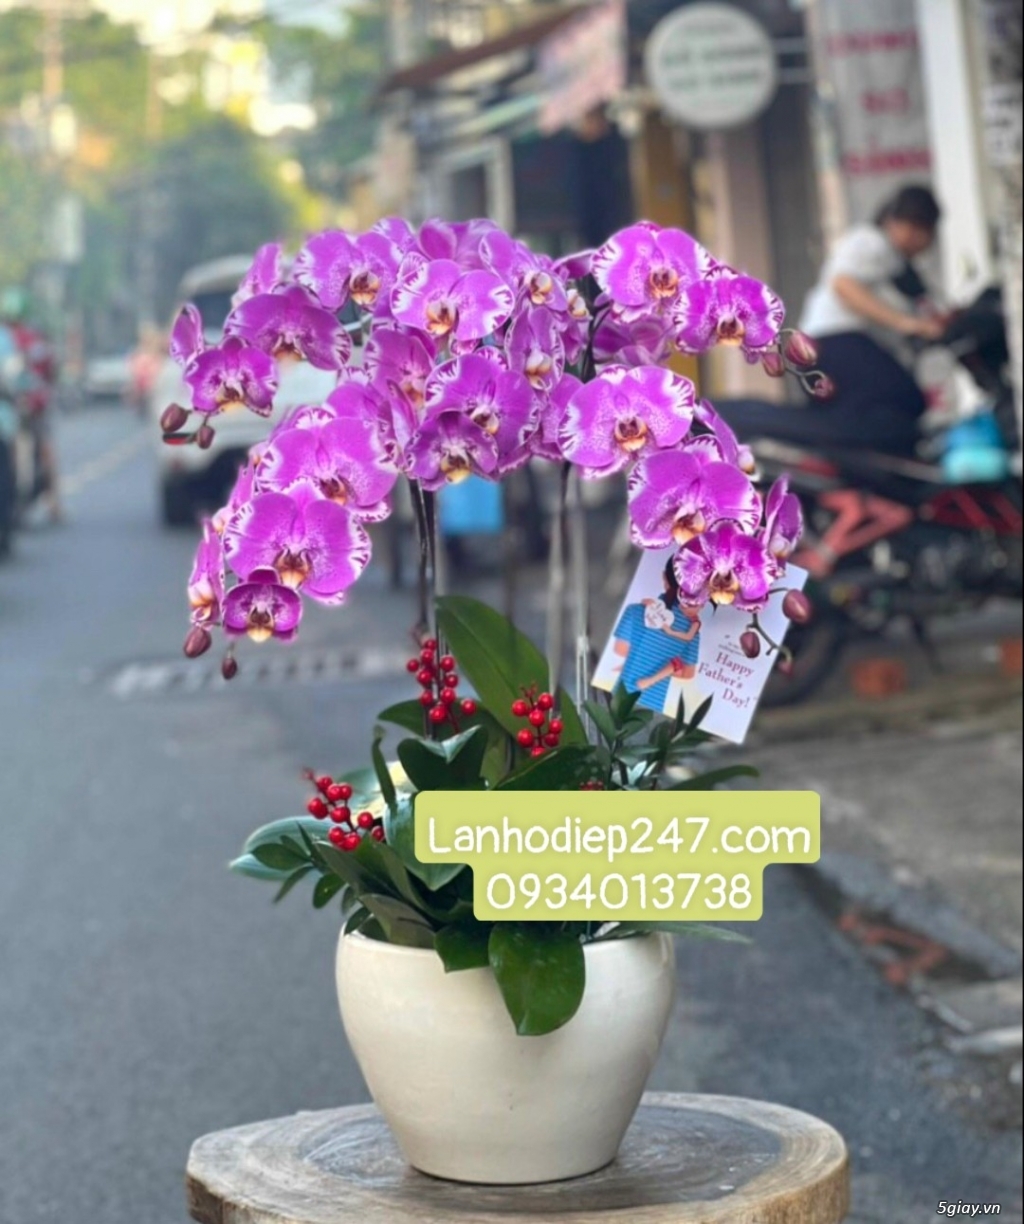 Lan Hồ Điệp VIP tại quận 7? Đặt hoa tại Hoa Lan 247 Sài Gòn Freeship - 22